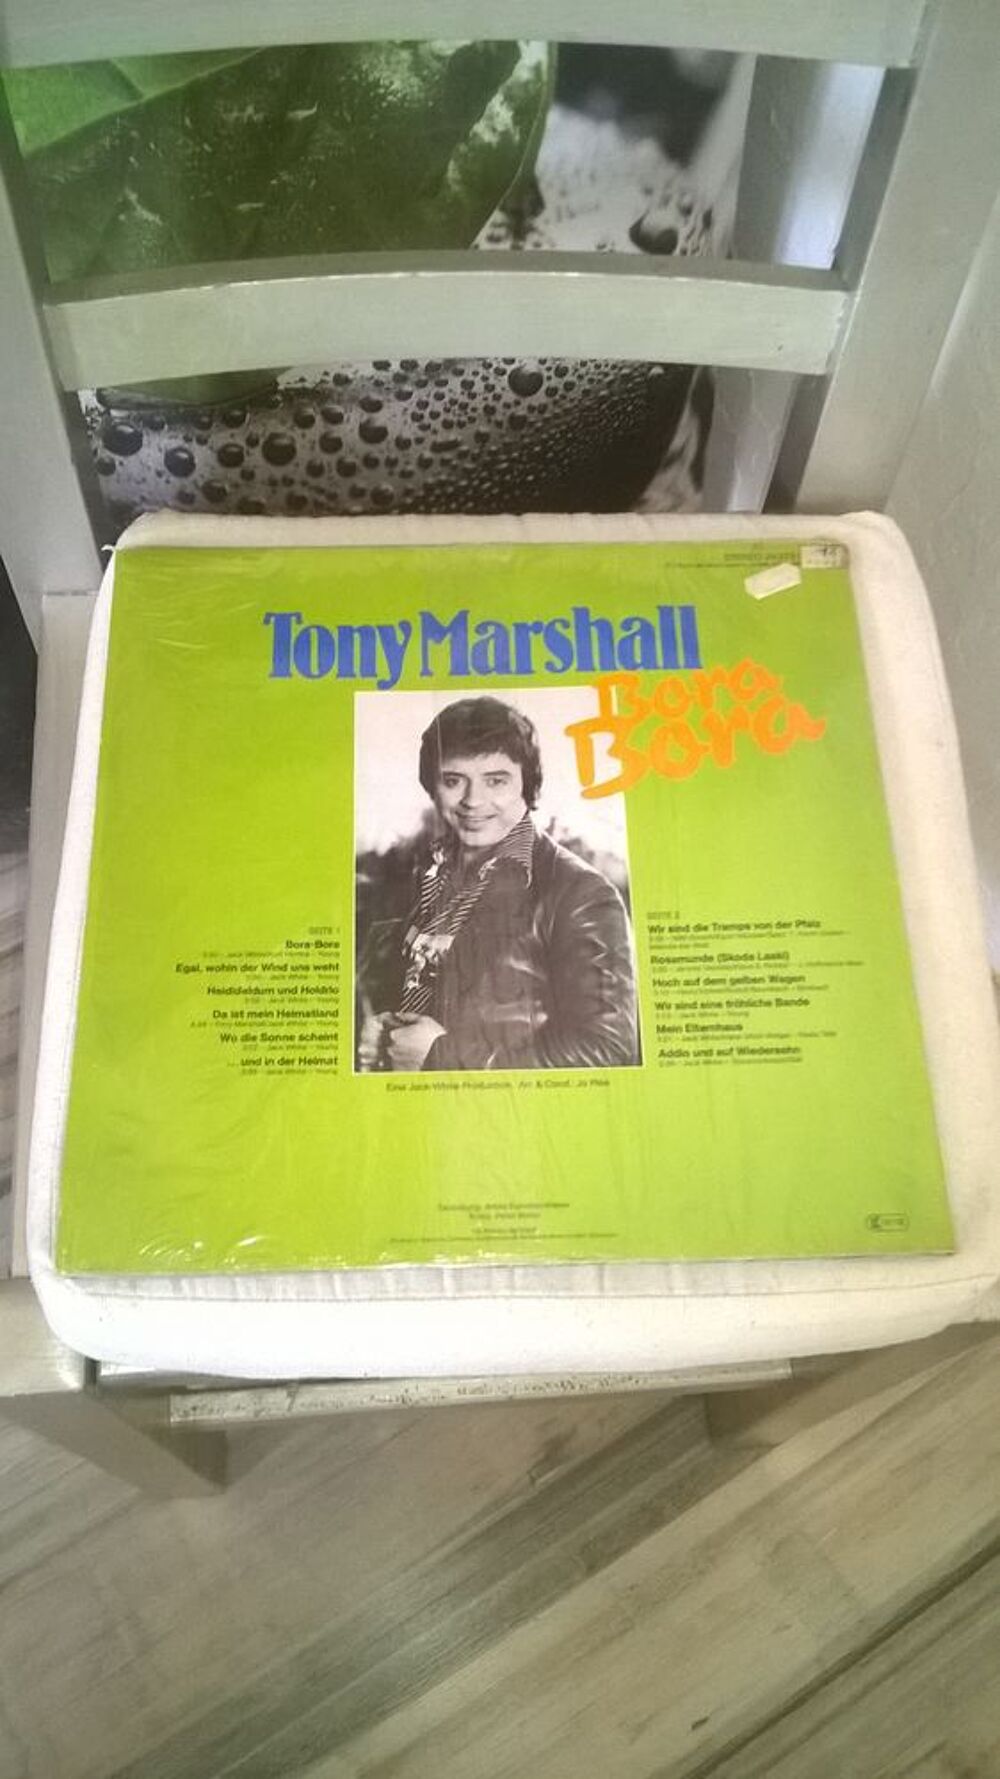 Vinyle Tony Marshall
Bora Bora
1978
Excellent etat
Bora CD et vinyles